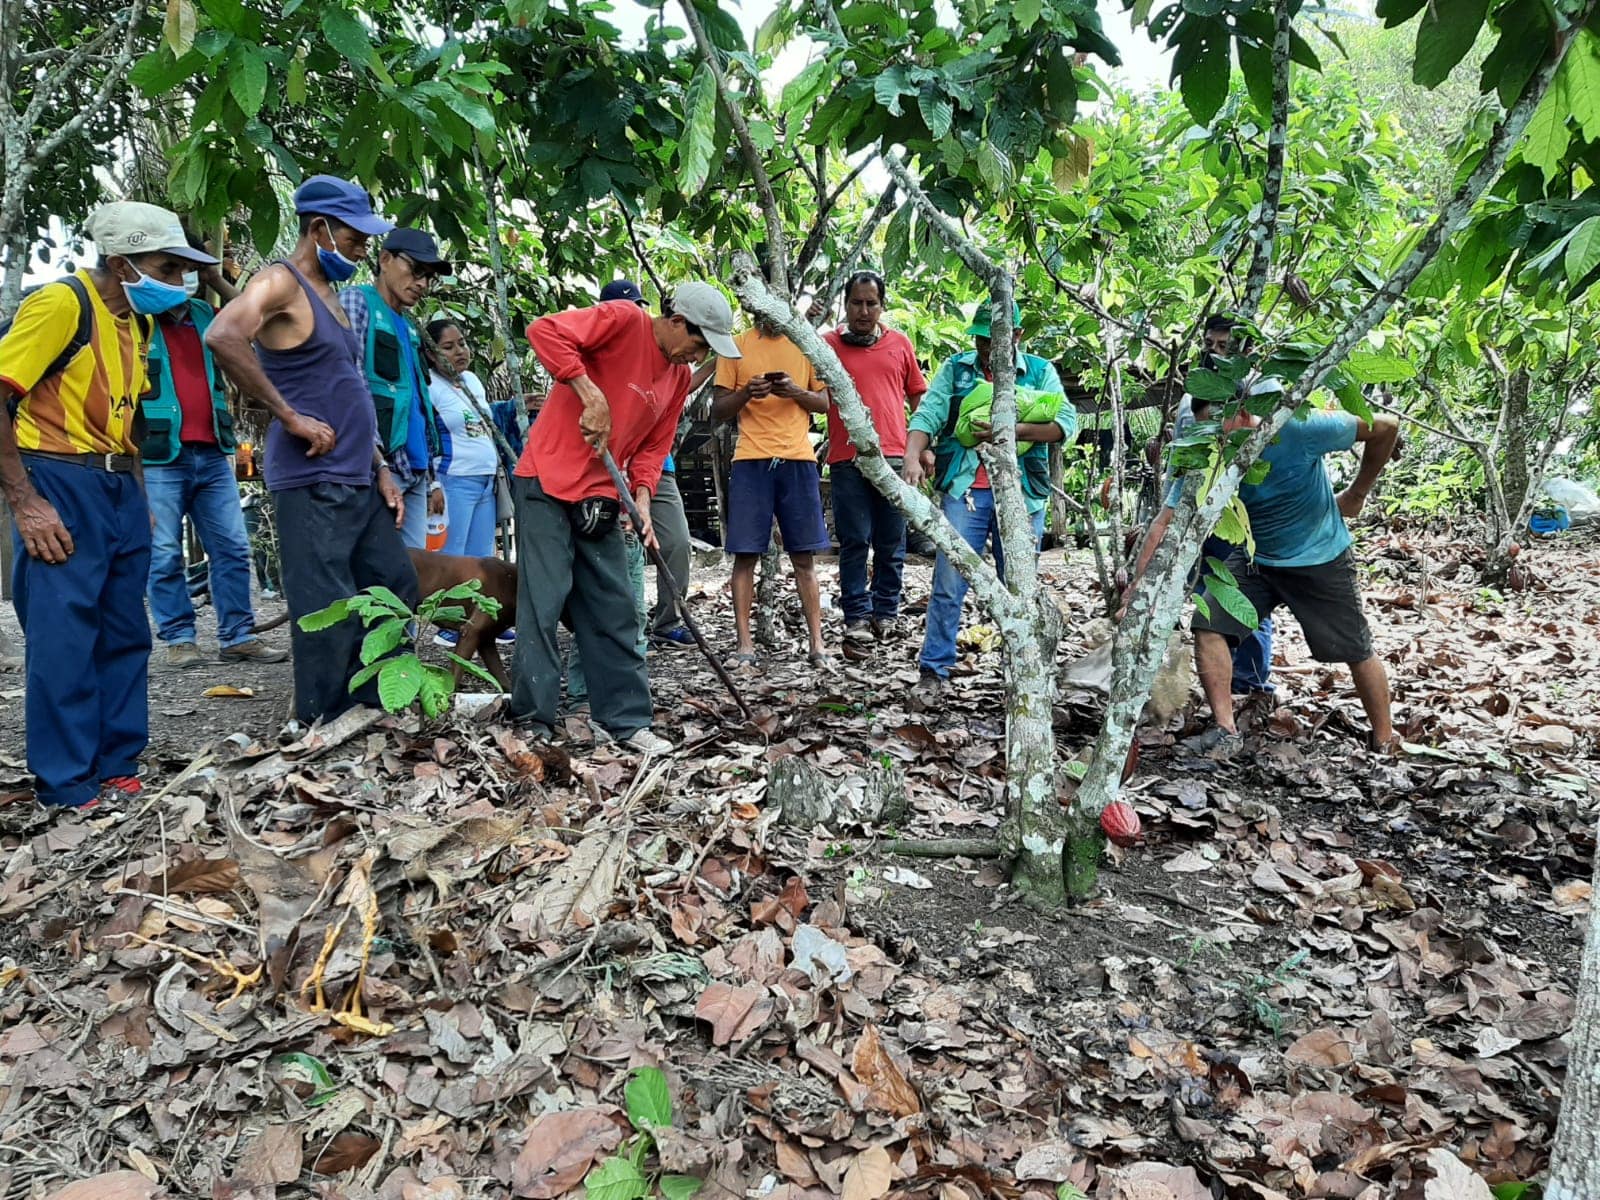 Fomento de la cadena de valor del cacao, de forma sostenible, en áreas colindantes a la zona de amortiguamiento del Parque Nacional del Río Abiseo